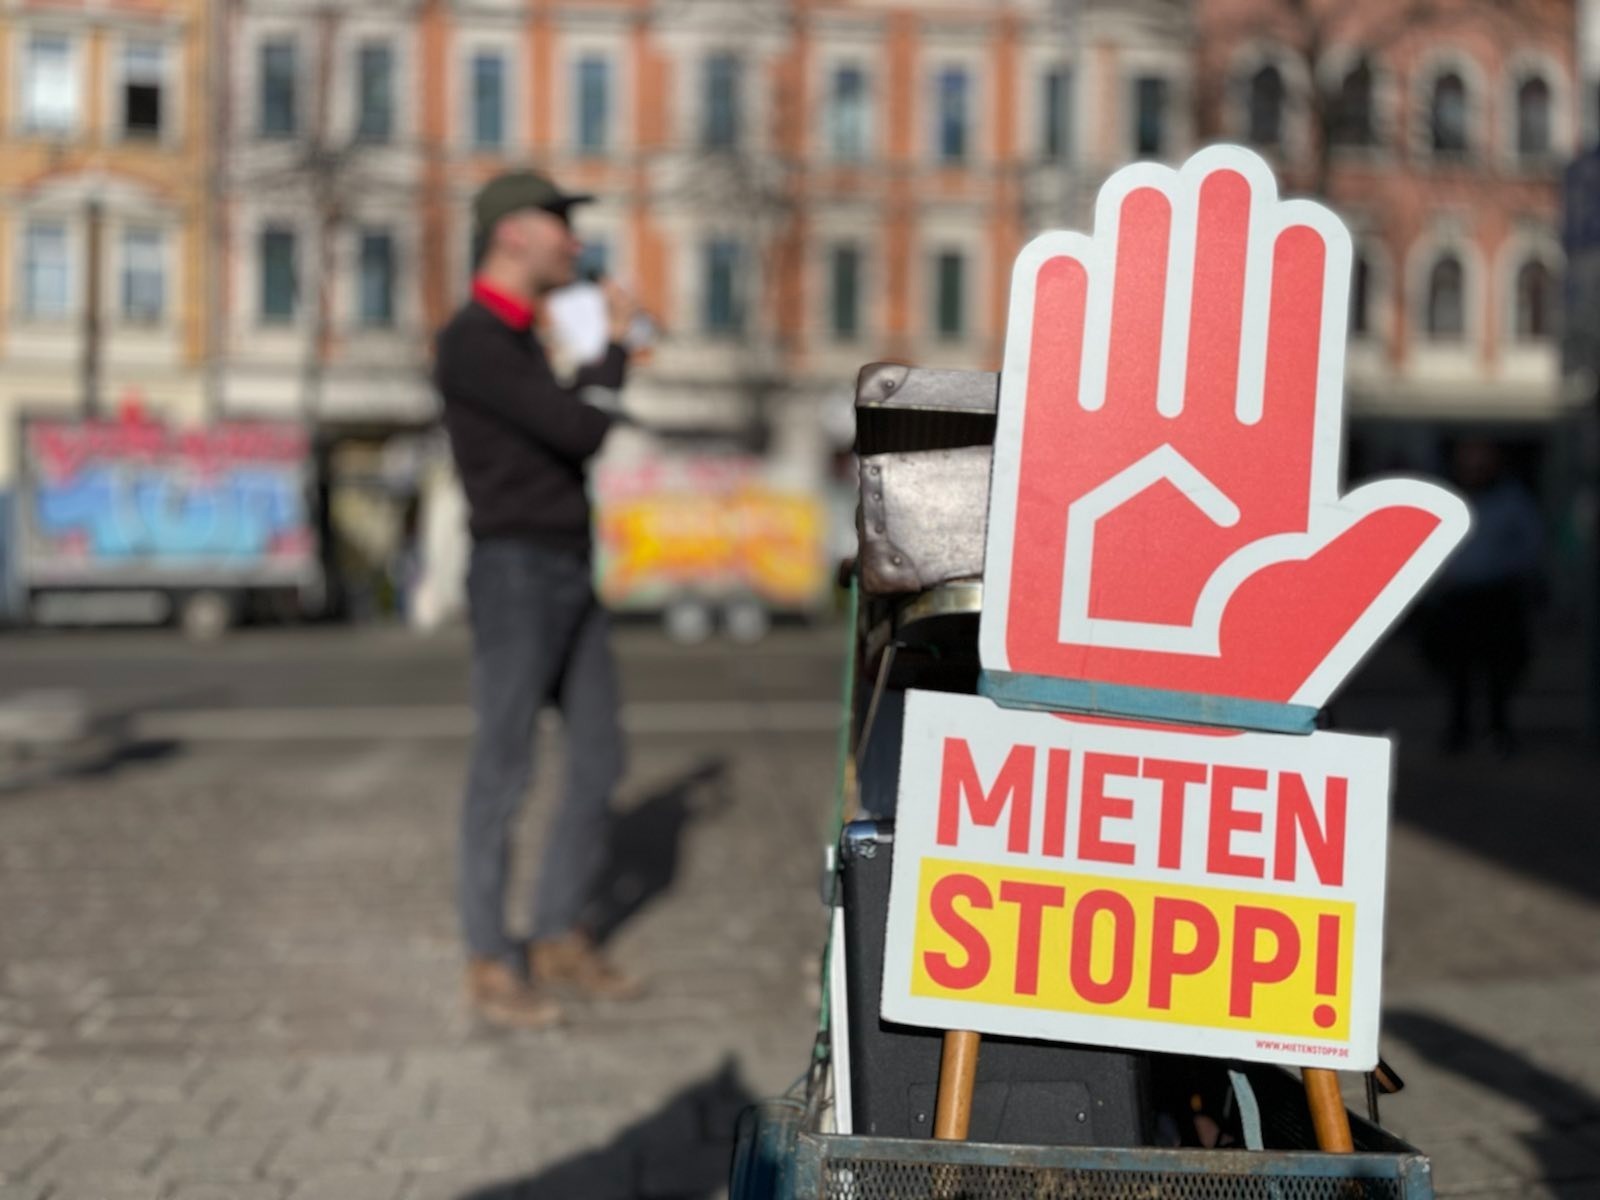   34 Euro pro Quadratmeter | Mikroapartments zu horrenden Preisen sorgen für Widerstand in Leipzig  